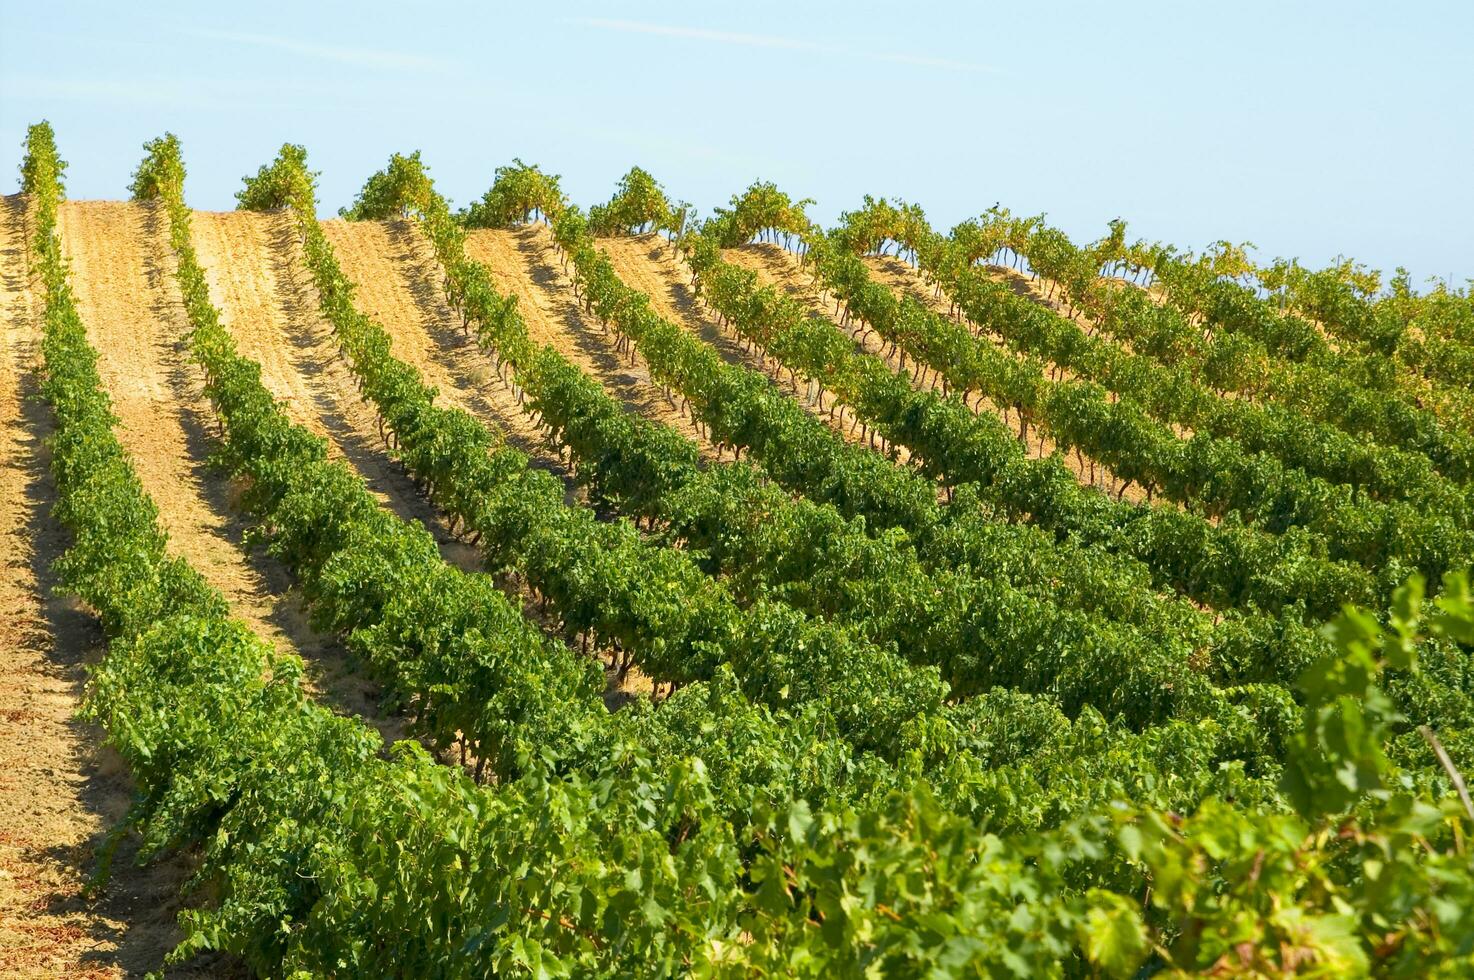 groot wijngaard in de zomer seizoen foto